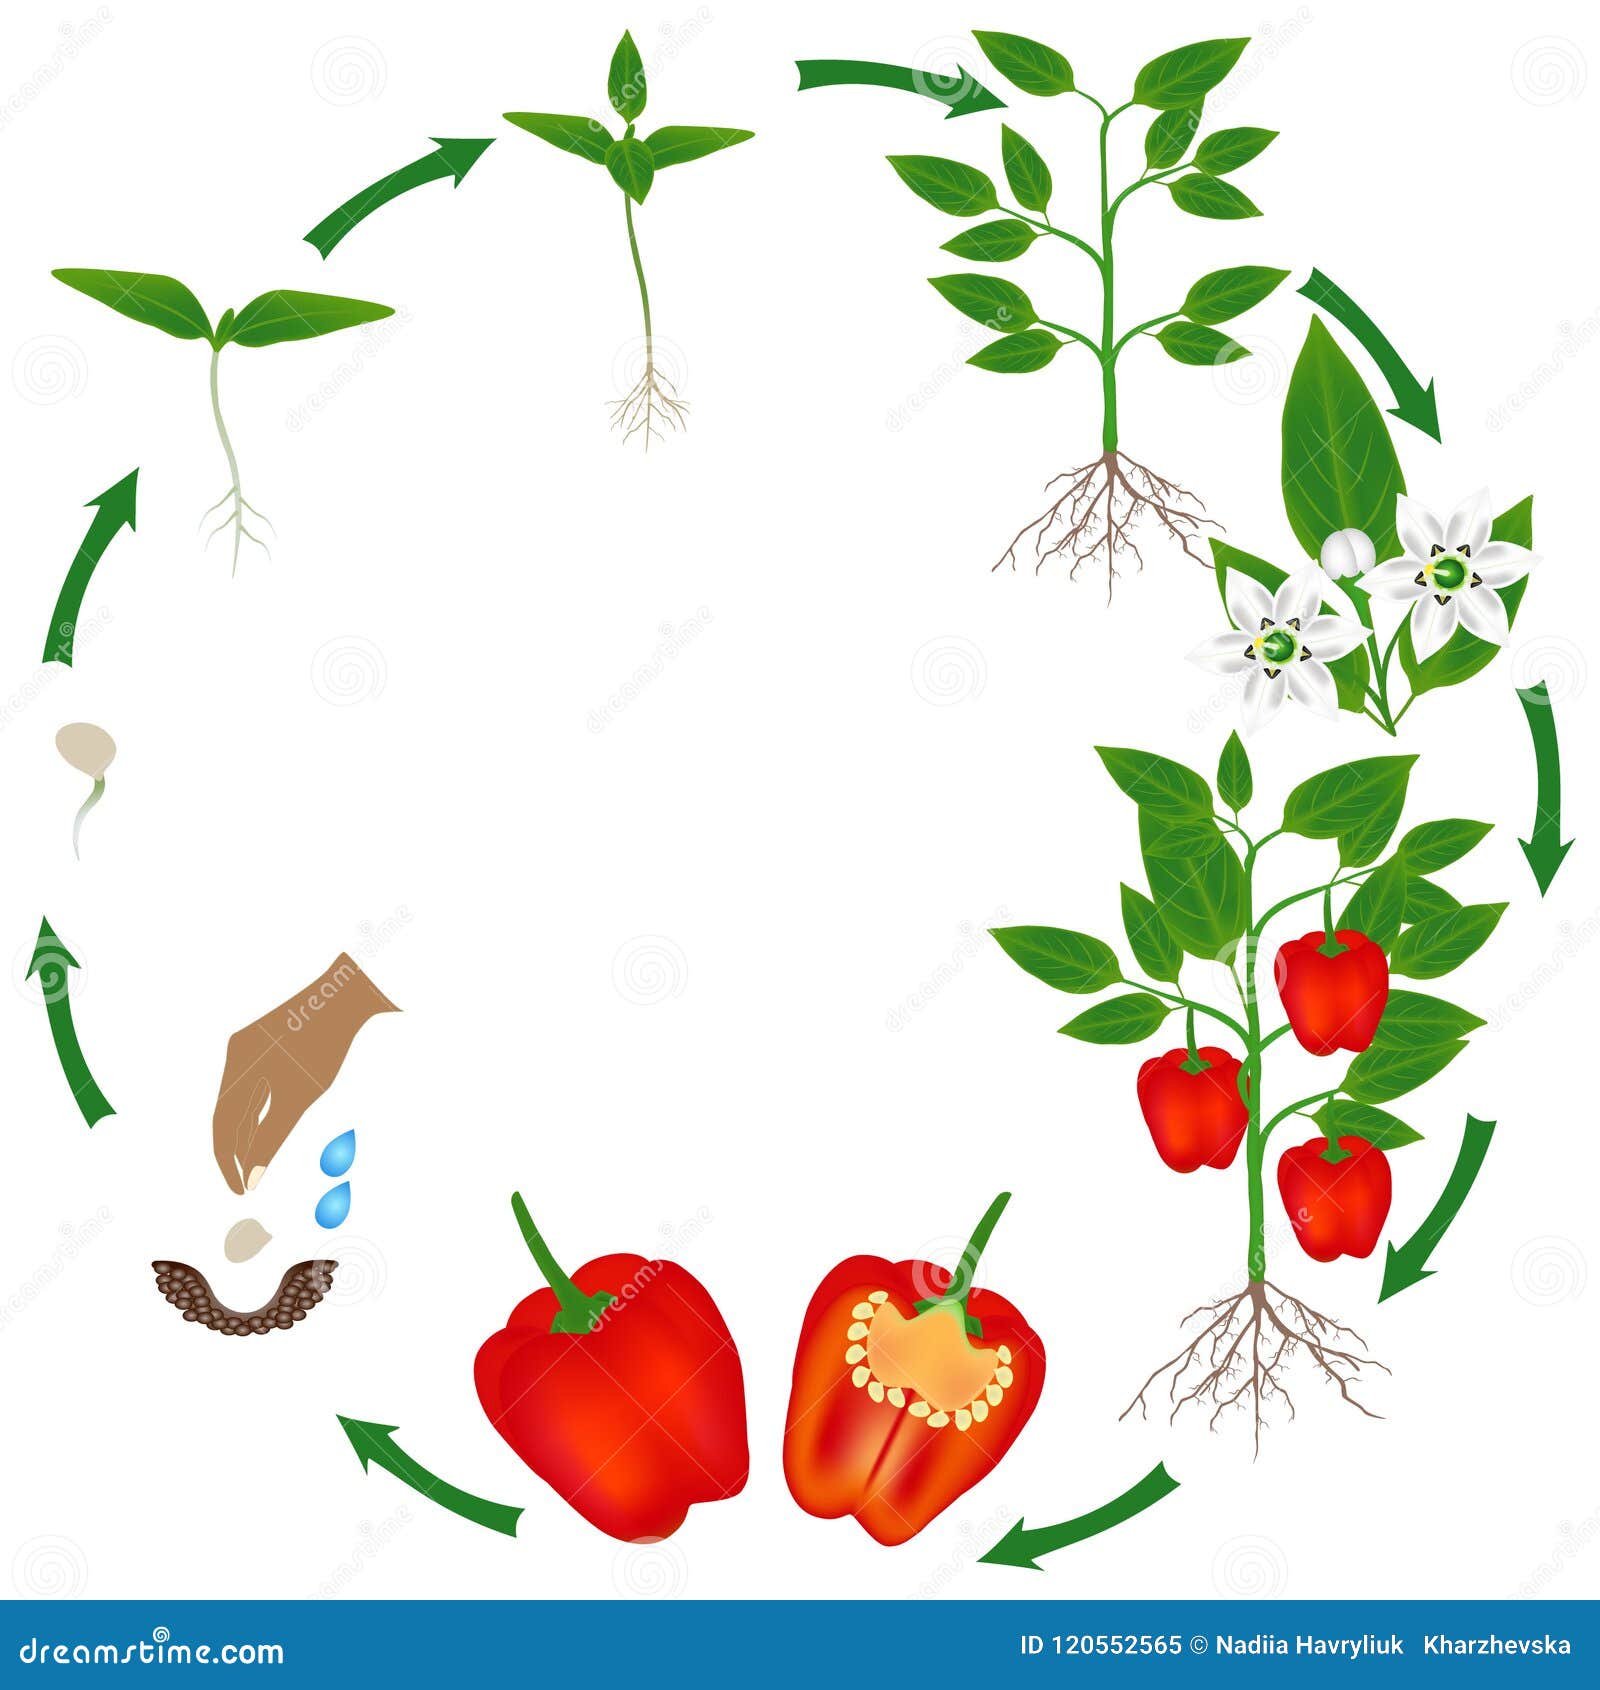 Жизненный цикл овощных растений по маркову. Жизненный цикл овощей для детей. Цикл томата. Жизненный цикл помидор для дошкольников. Цикл развития растений для дошкольников.